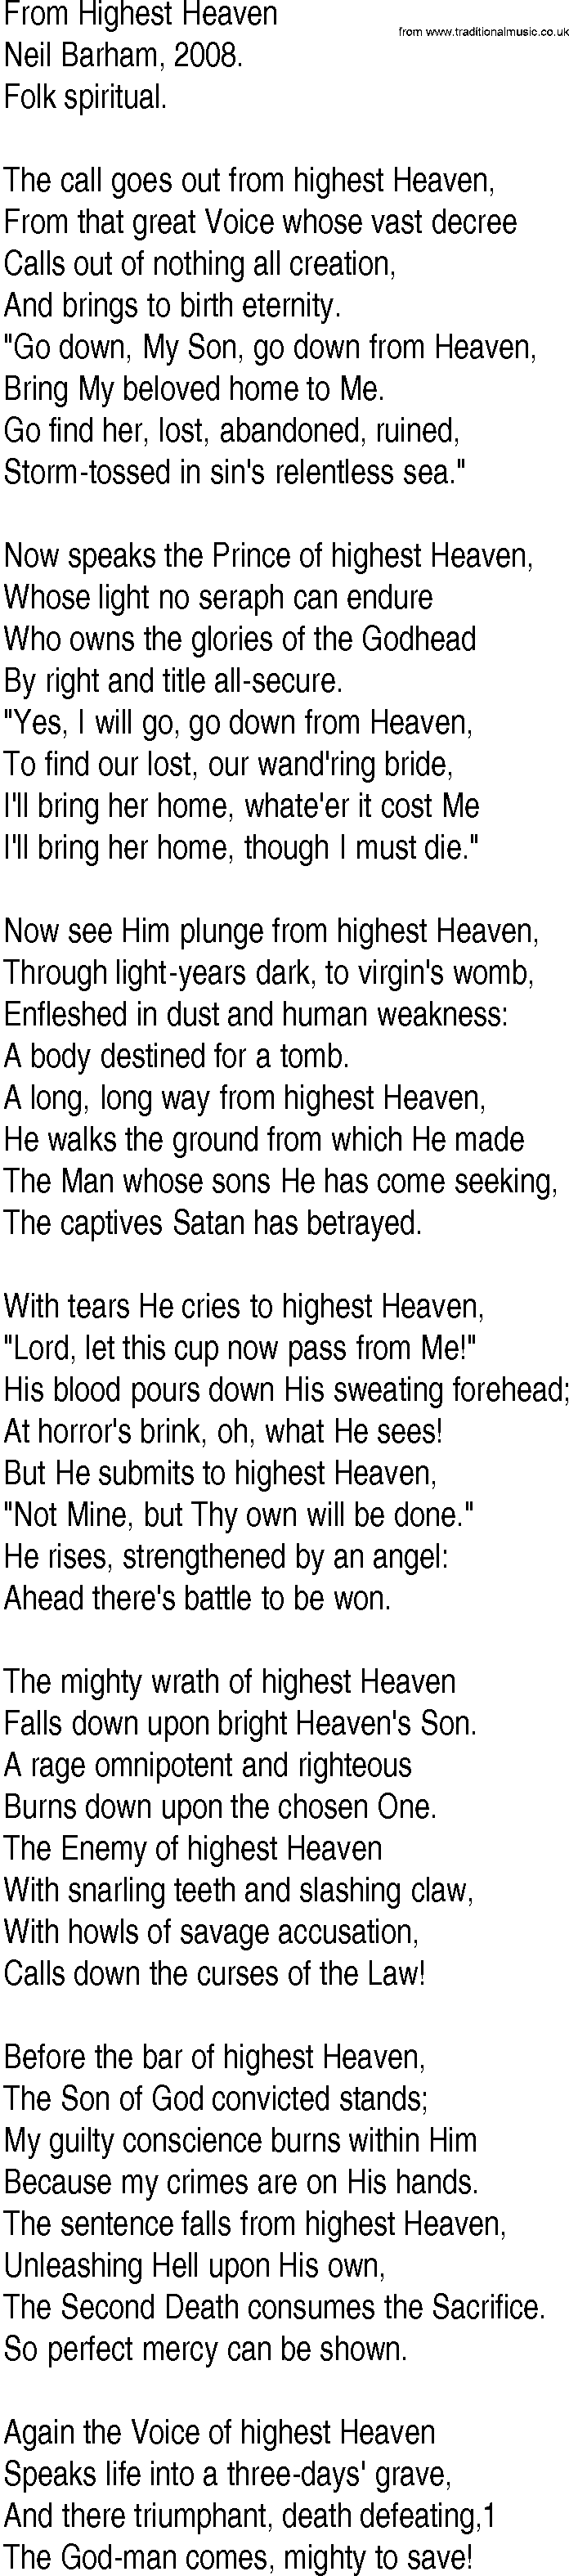 Hymn and Gospel Song: From Highest Heaven by Neil Barham lyrics